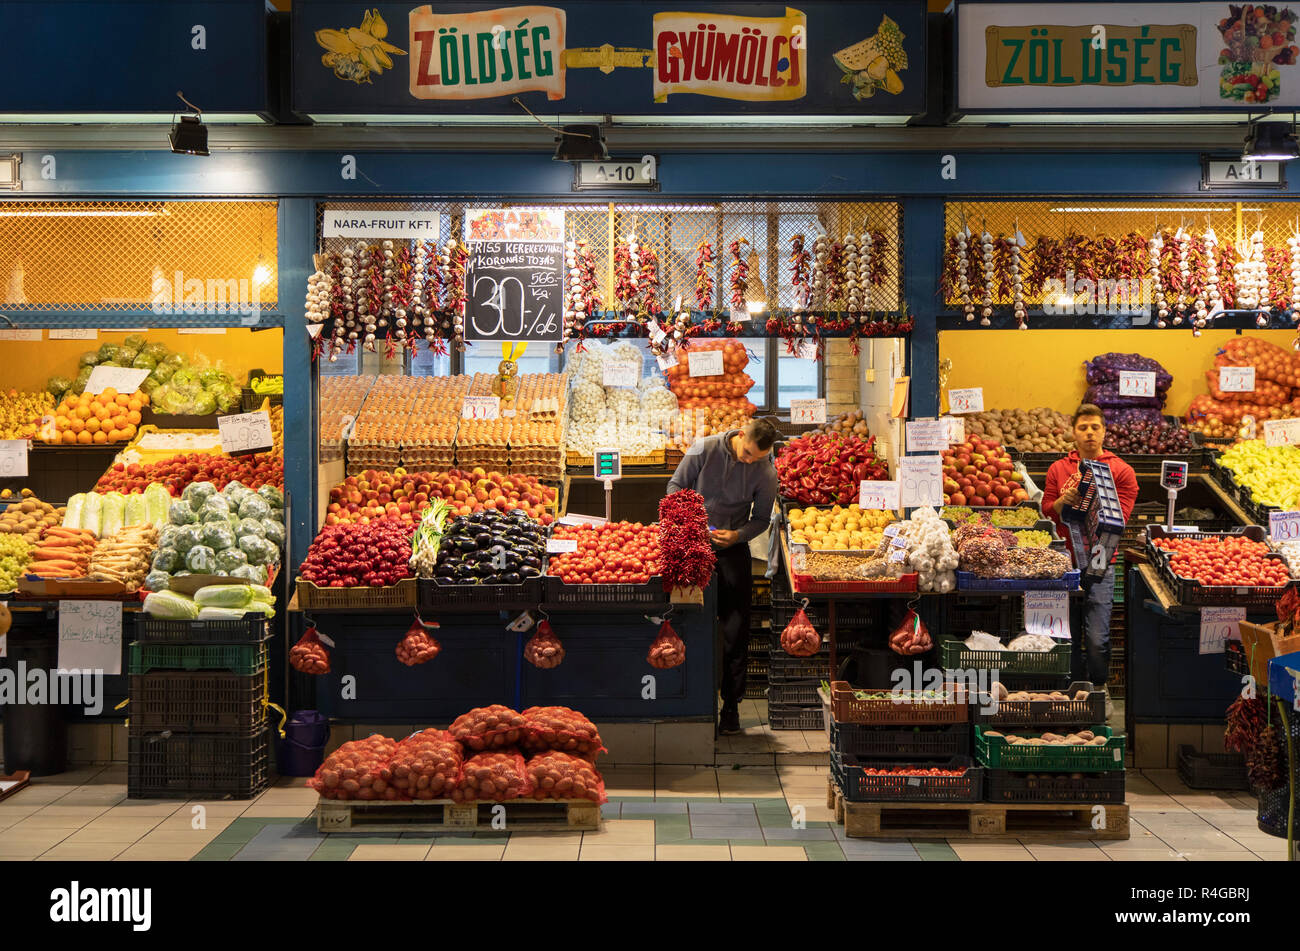 Mercado Interior De Verduras Y Frutas Fotos e Imágenes de stock - Alamy